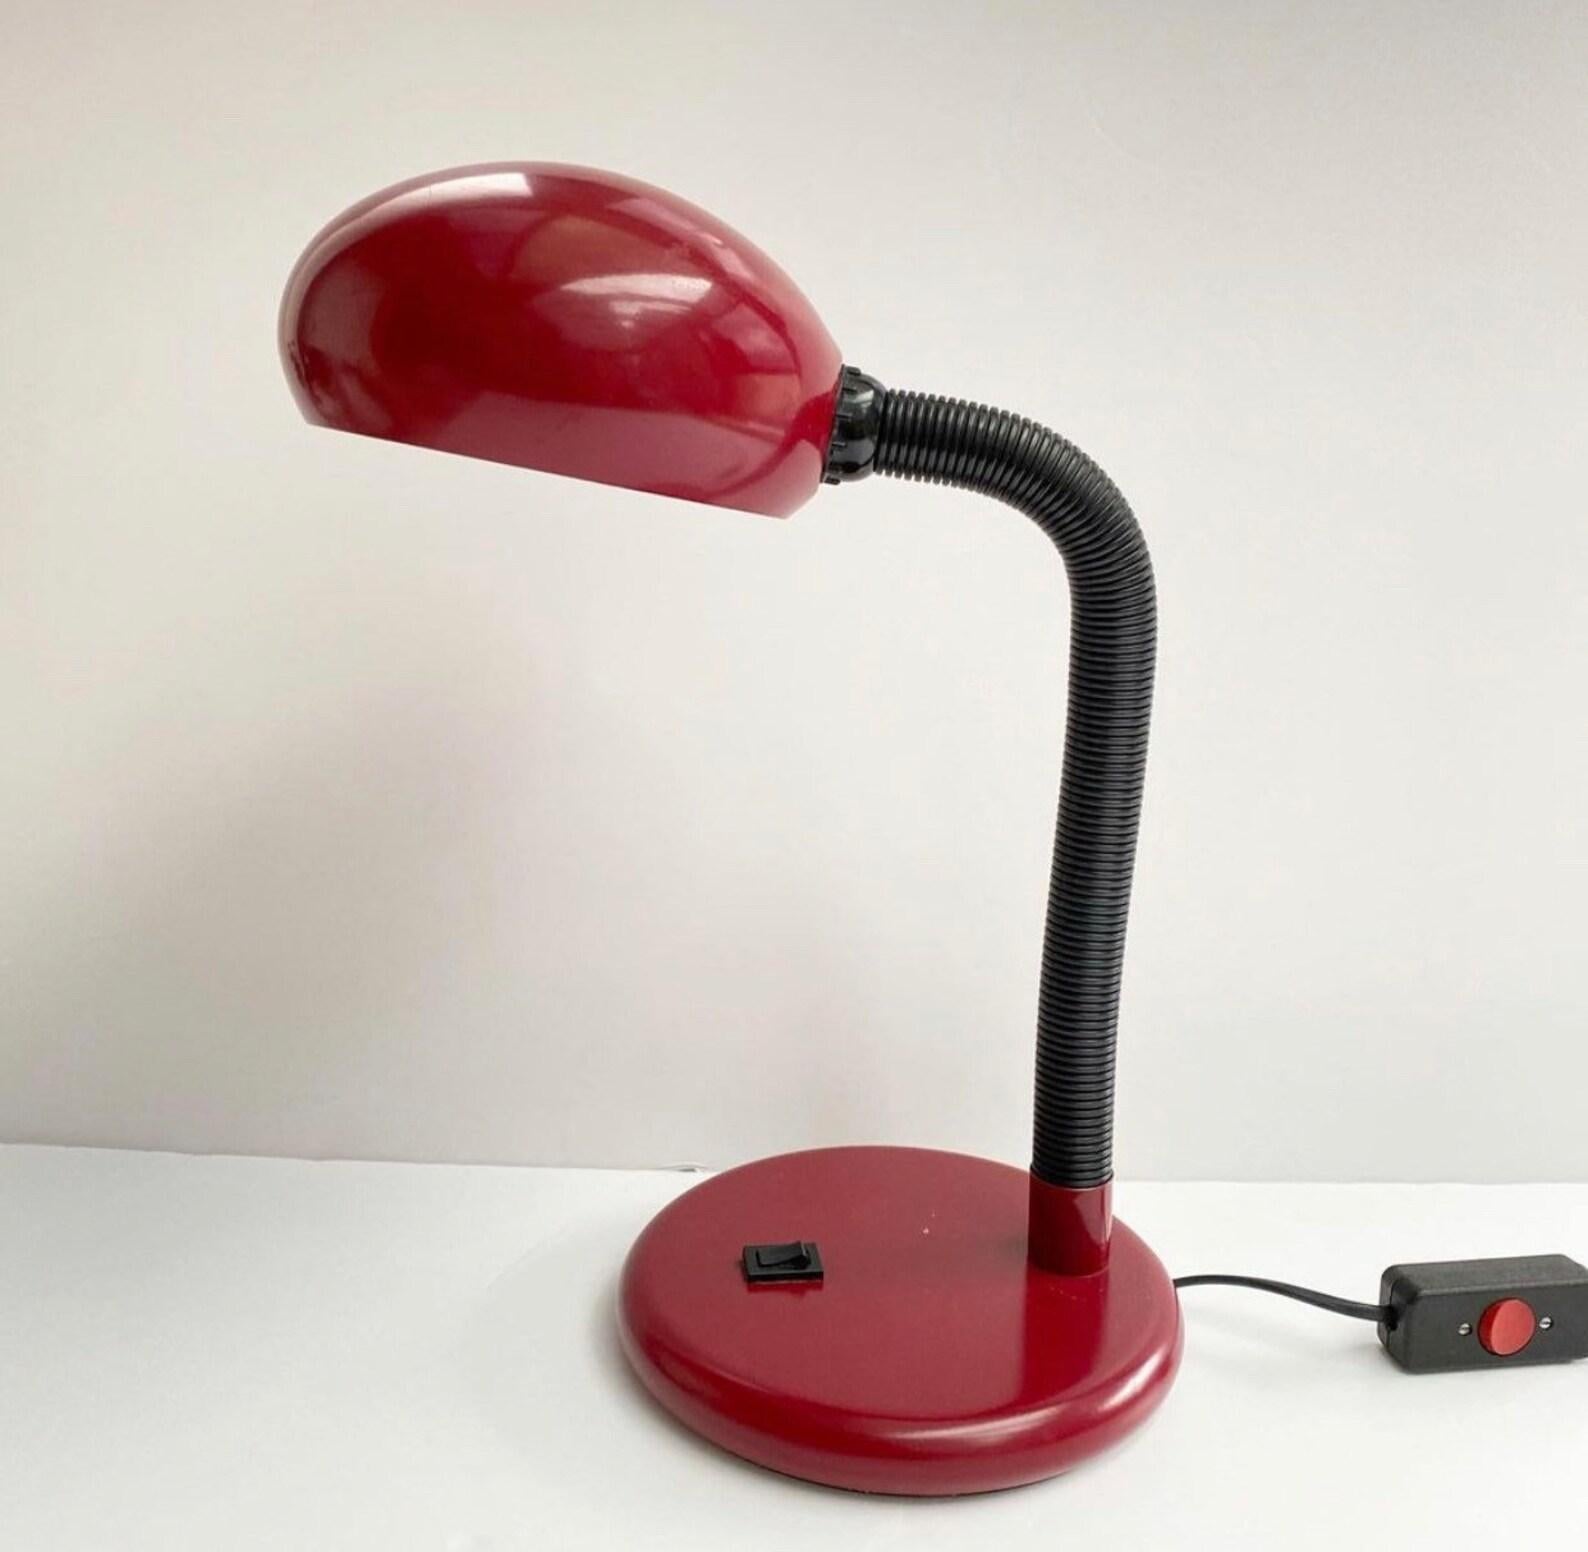 Lampe de bureau Vintage Red.

La lampe de bureau MidCentury ajoutera un accent rétro à votre intérieur.

Fabriqué en Allemagne.

Le câblage est en état de marche. Le câblage est adapté aux États-Unis, au Canada et à l'Europe.

Bon état